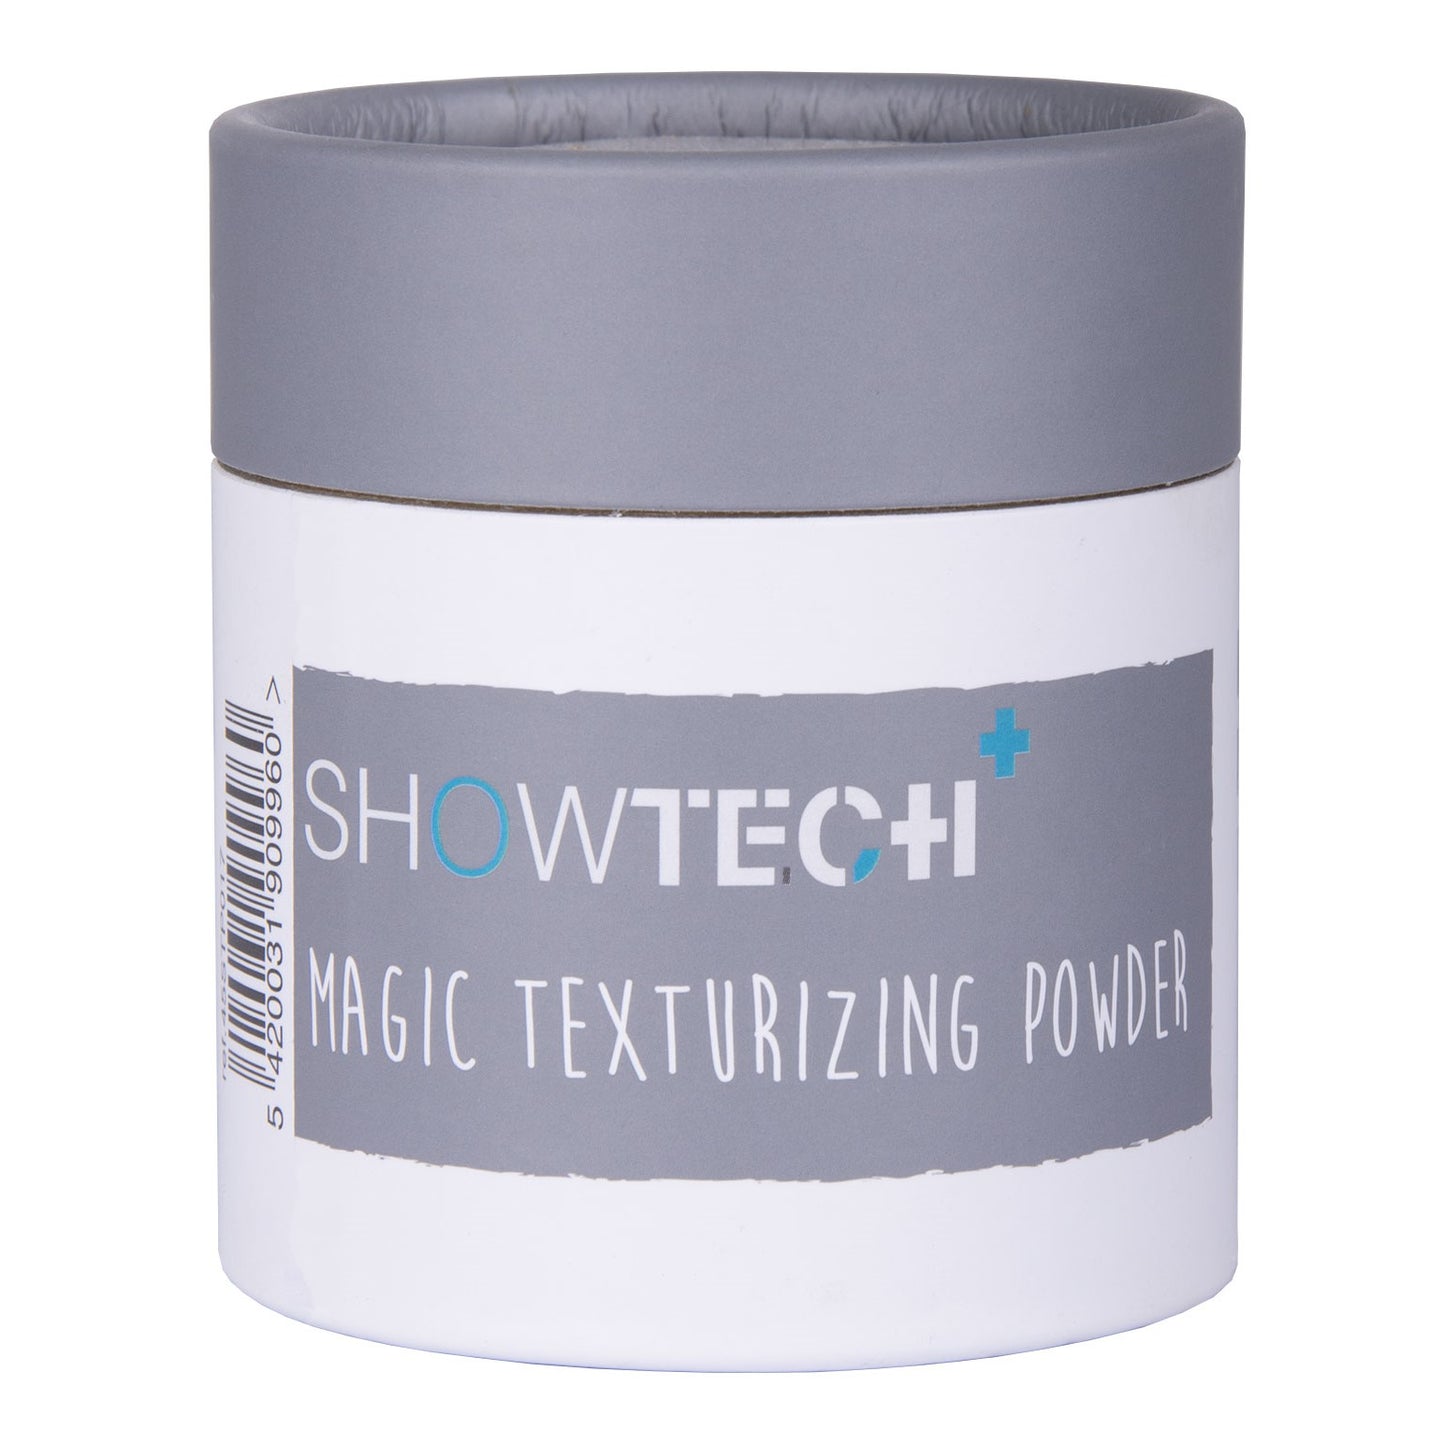 Show Tech+ Magic Texturizing Powder, natürliche Farbverstärkung für jedes Fell, 100g